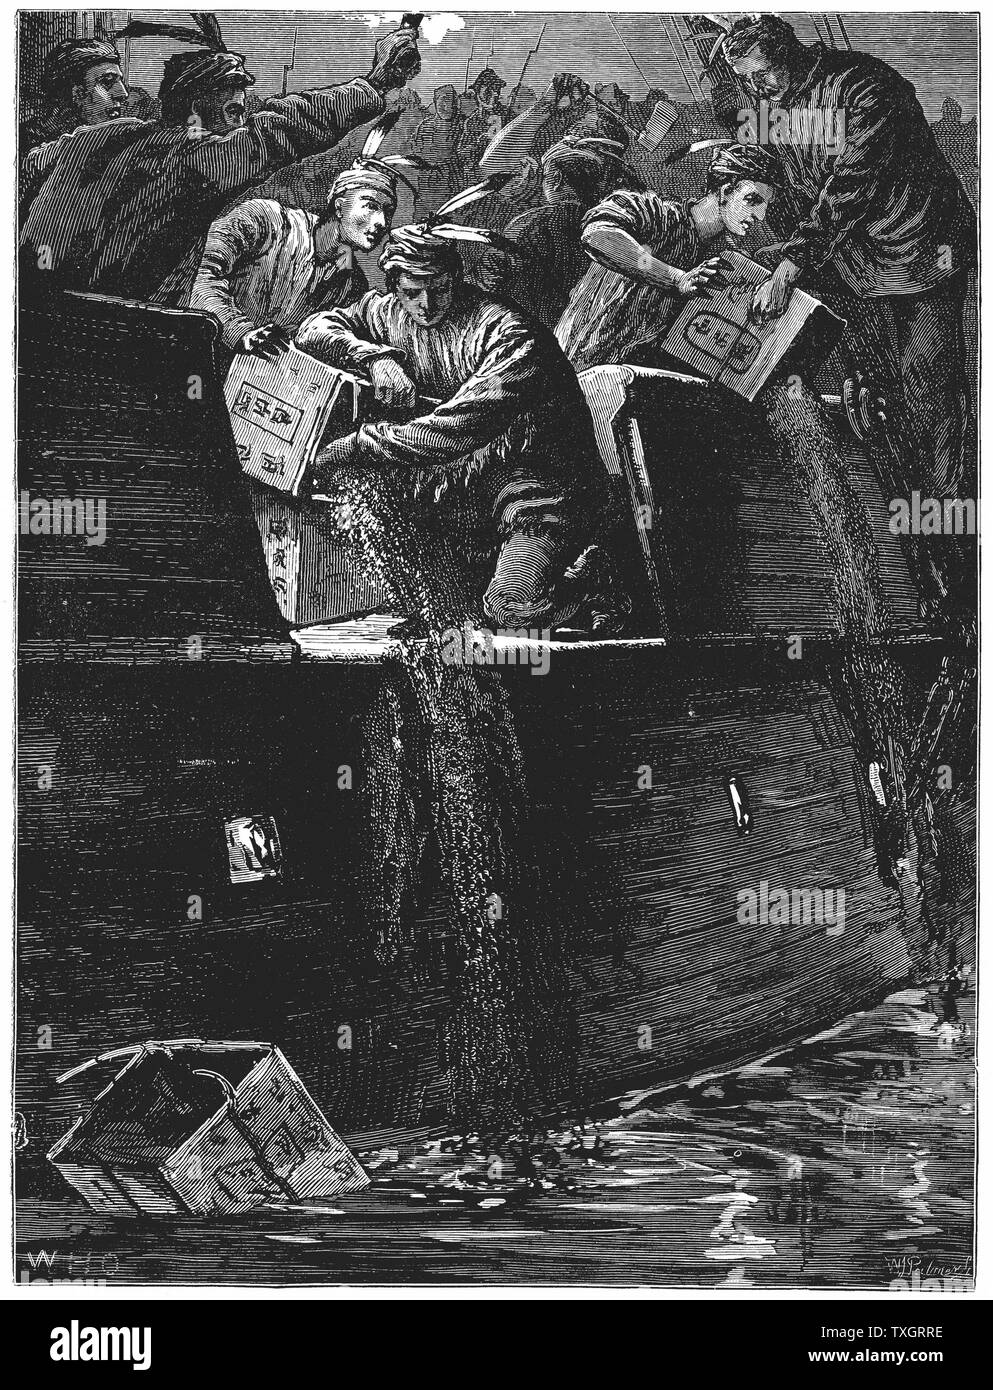 Boston Tea Party, 26. Dezember 1773. Einwohner von Boston, Massachusetts, verkleidet als Indianer, werfen Tee aus Schiffen im Hafen ins Wasser als Protest gegen britische steuern. "Keine Besteuerung ohne Mitspracherecht" späten neunzehnten Jahrhundert Holzstich Stockfoto